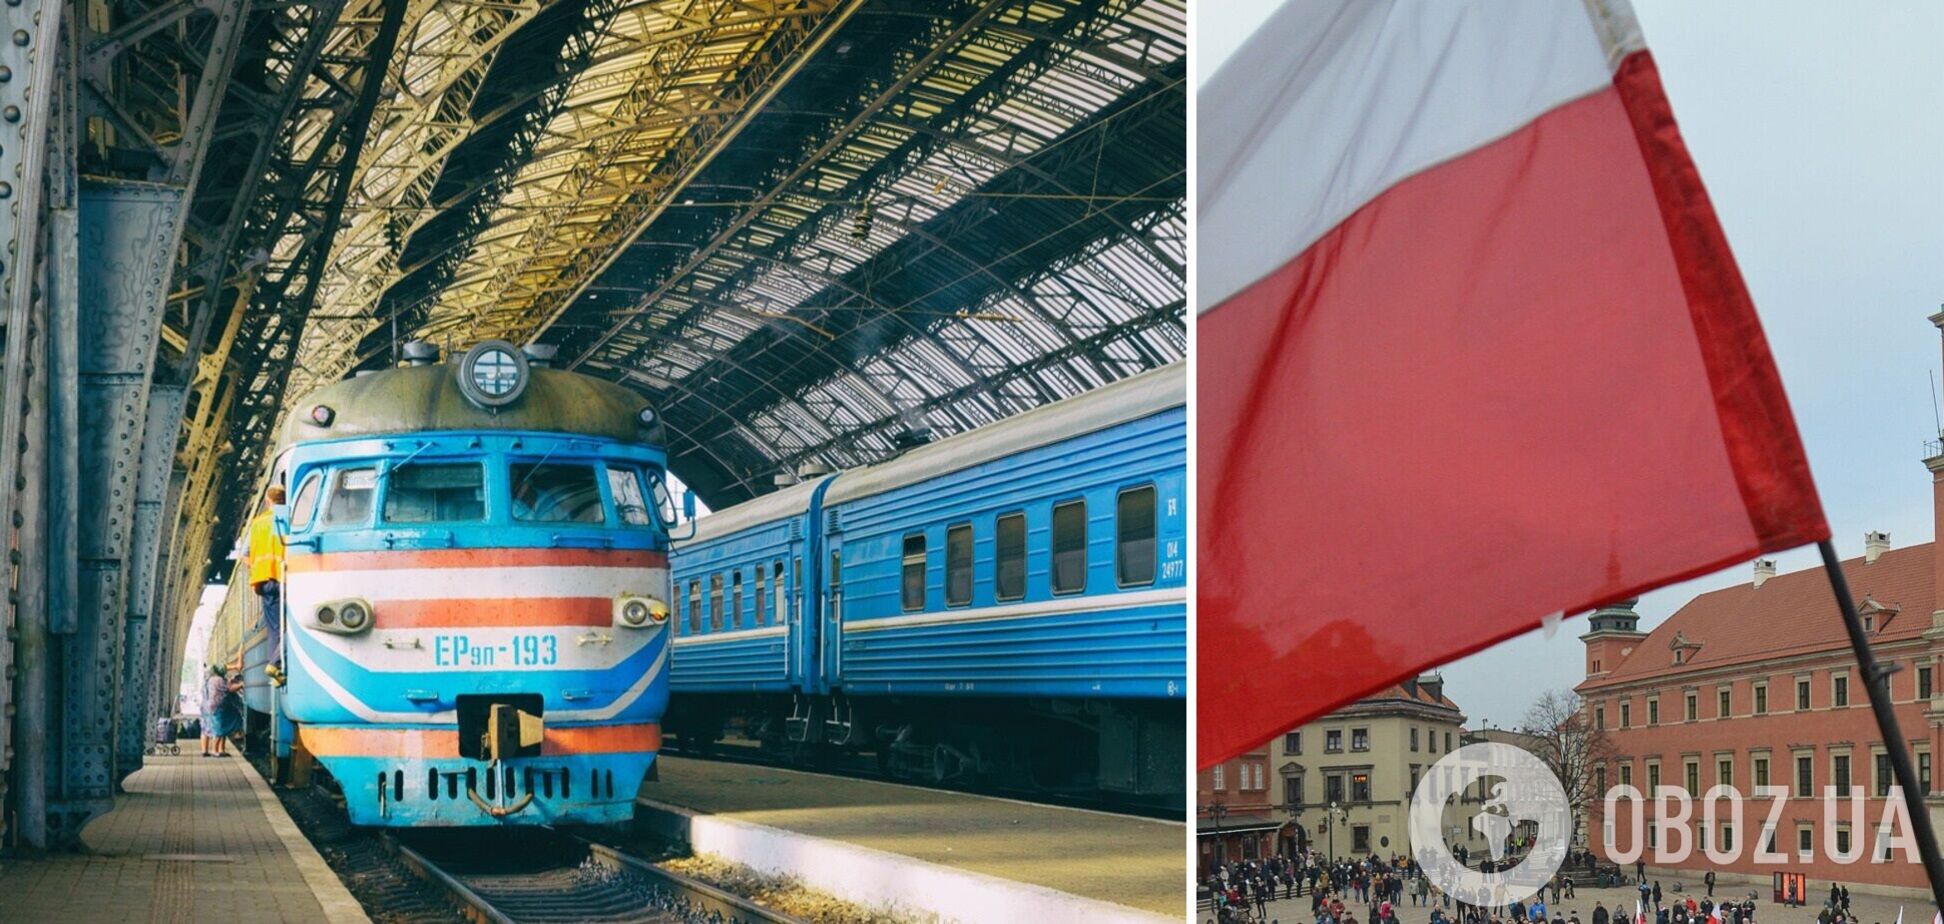 'Укрзалізниця' запускает евроколею – для удобного пересечения границы с Польшей потратят 4 млн грн